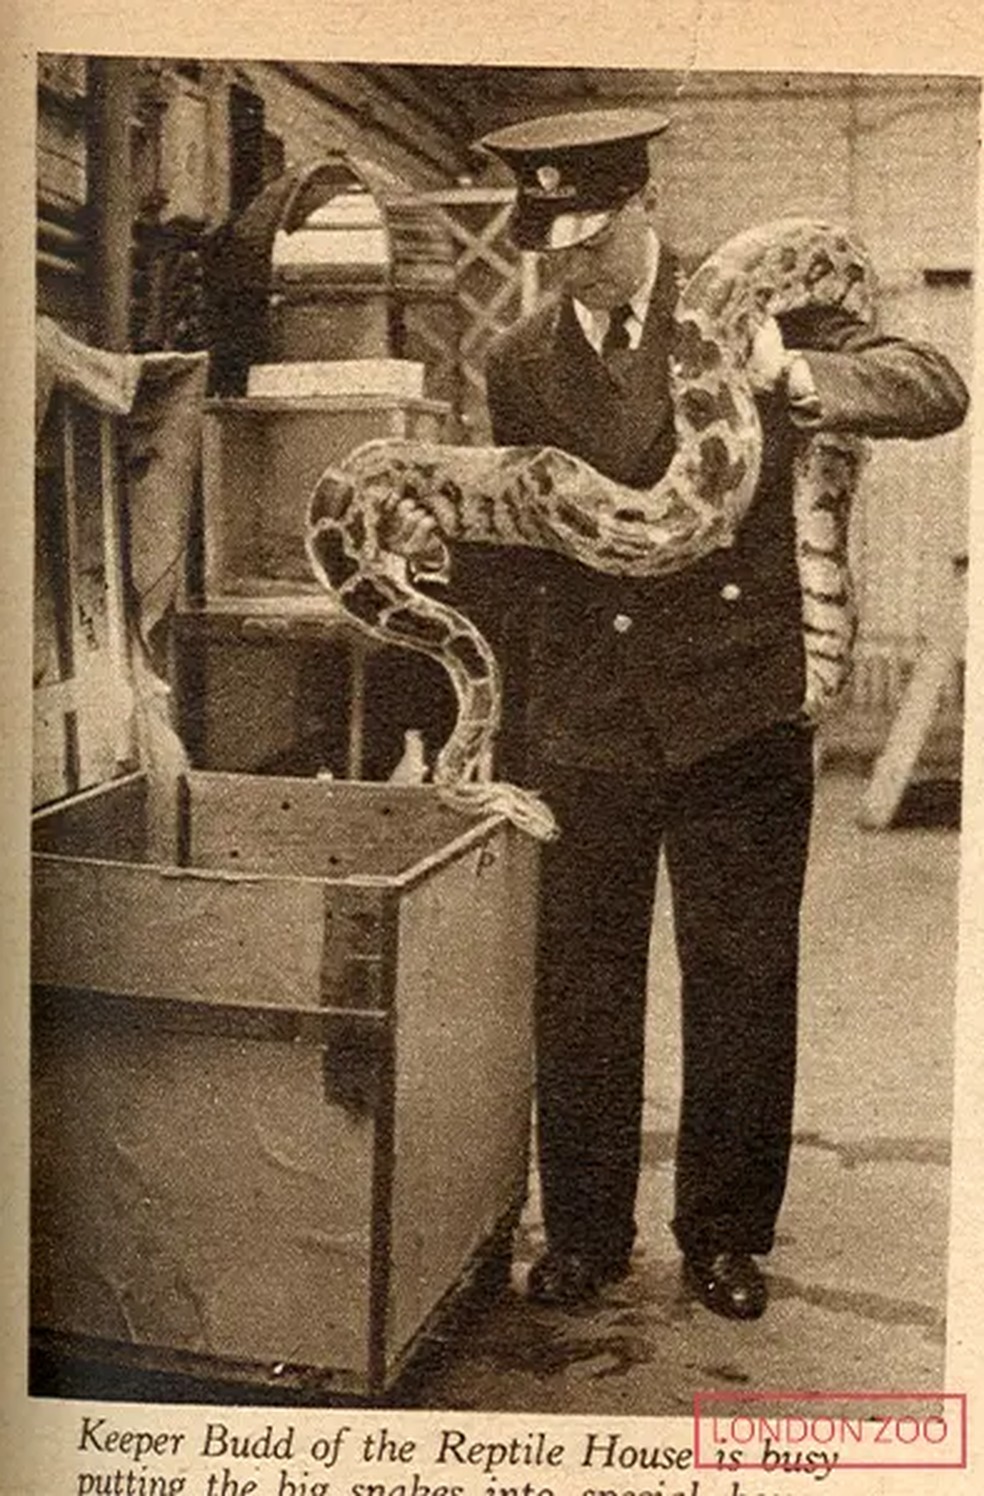 Recorte de um jornal da época que mostra uma cobra Píton sendo colocada em uma caixa — Foto: London Zoo